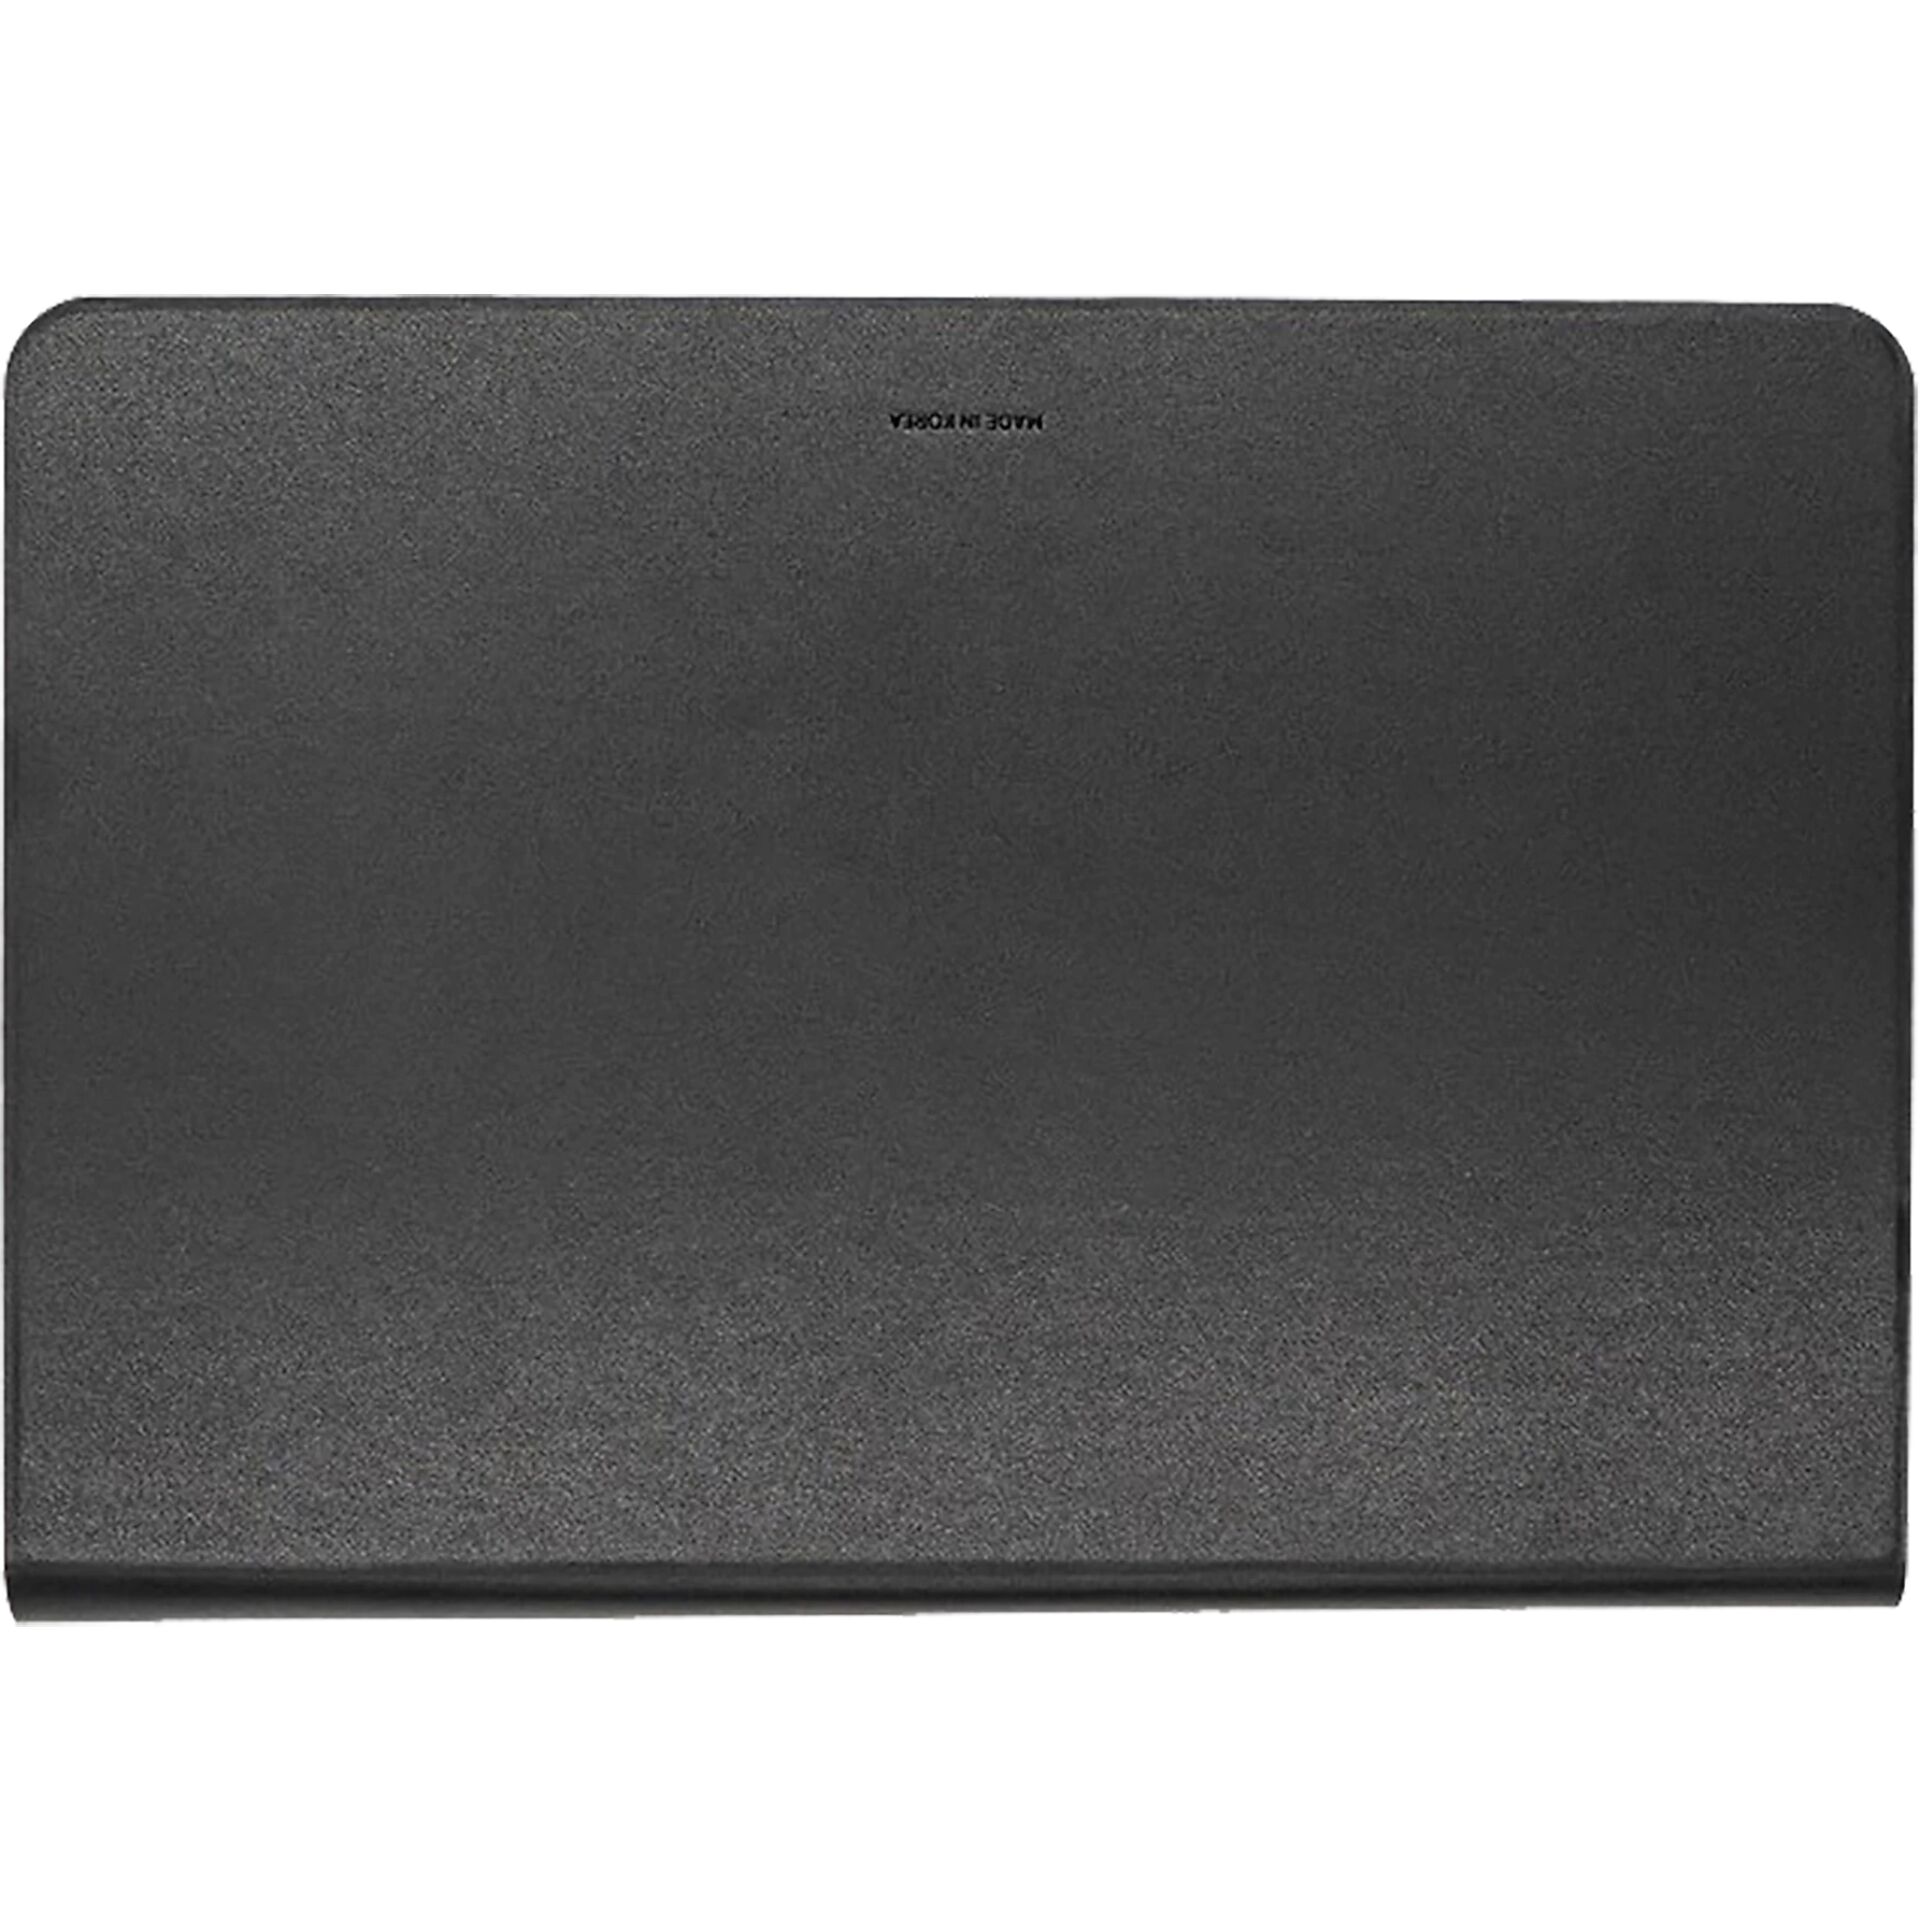 Samsung Targus Slim Keyboard Cover für Galaxy Tab S6 Lite schwarz, Layout: DE, Bluetooth-Tastatur und Schutzhülle